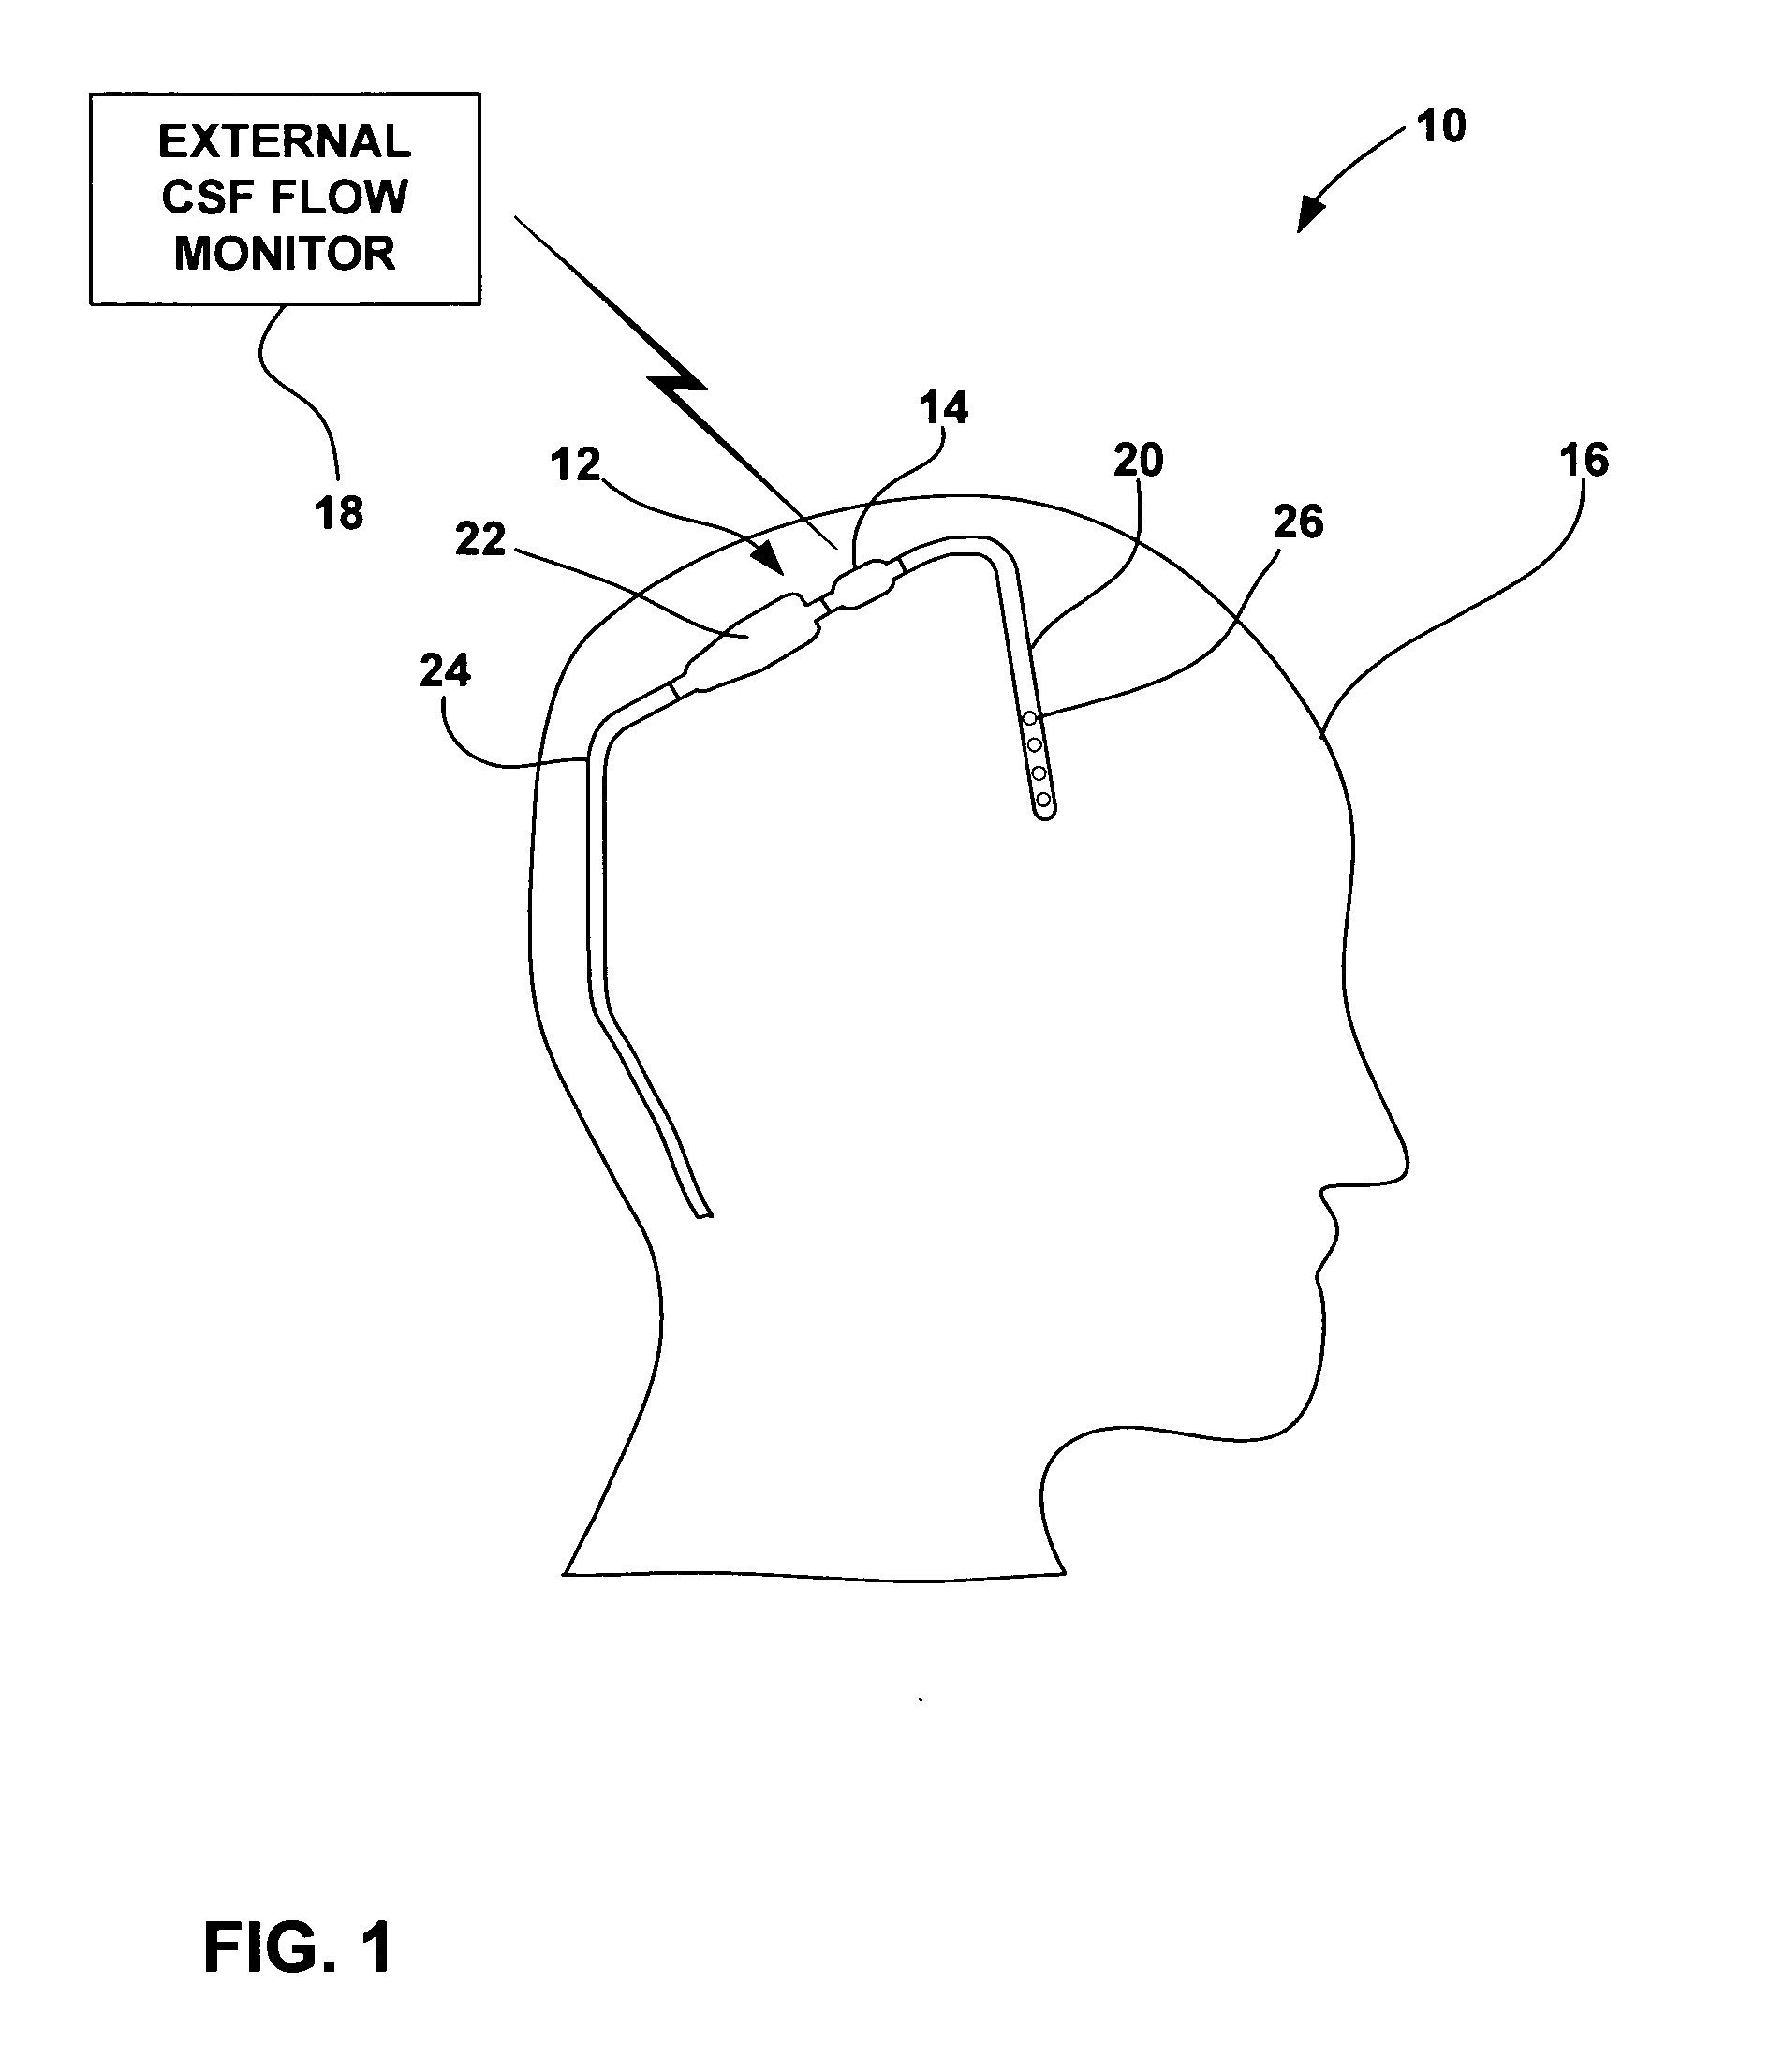 Cerebral spinal fluid flow sensing device